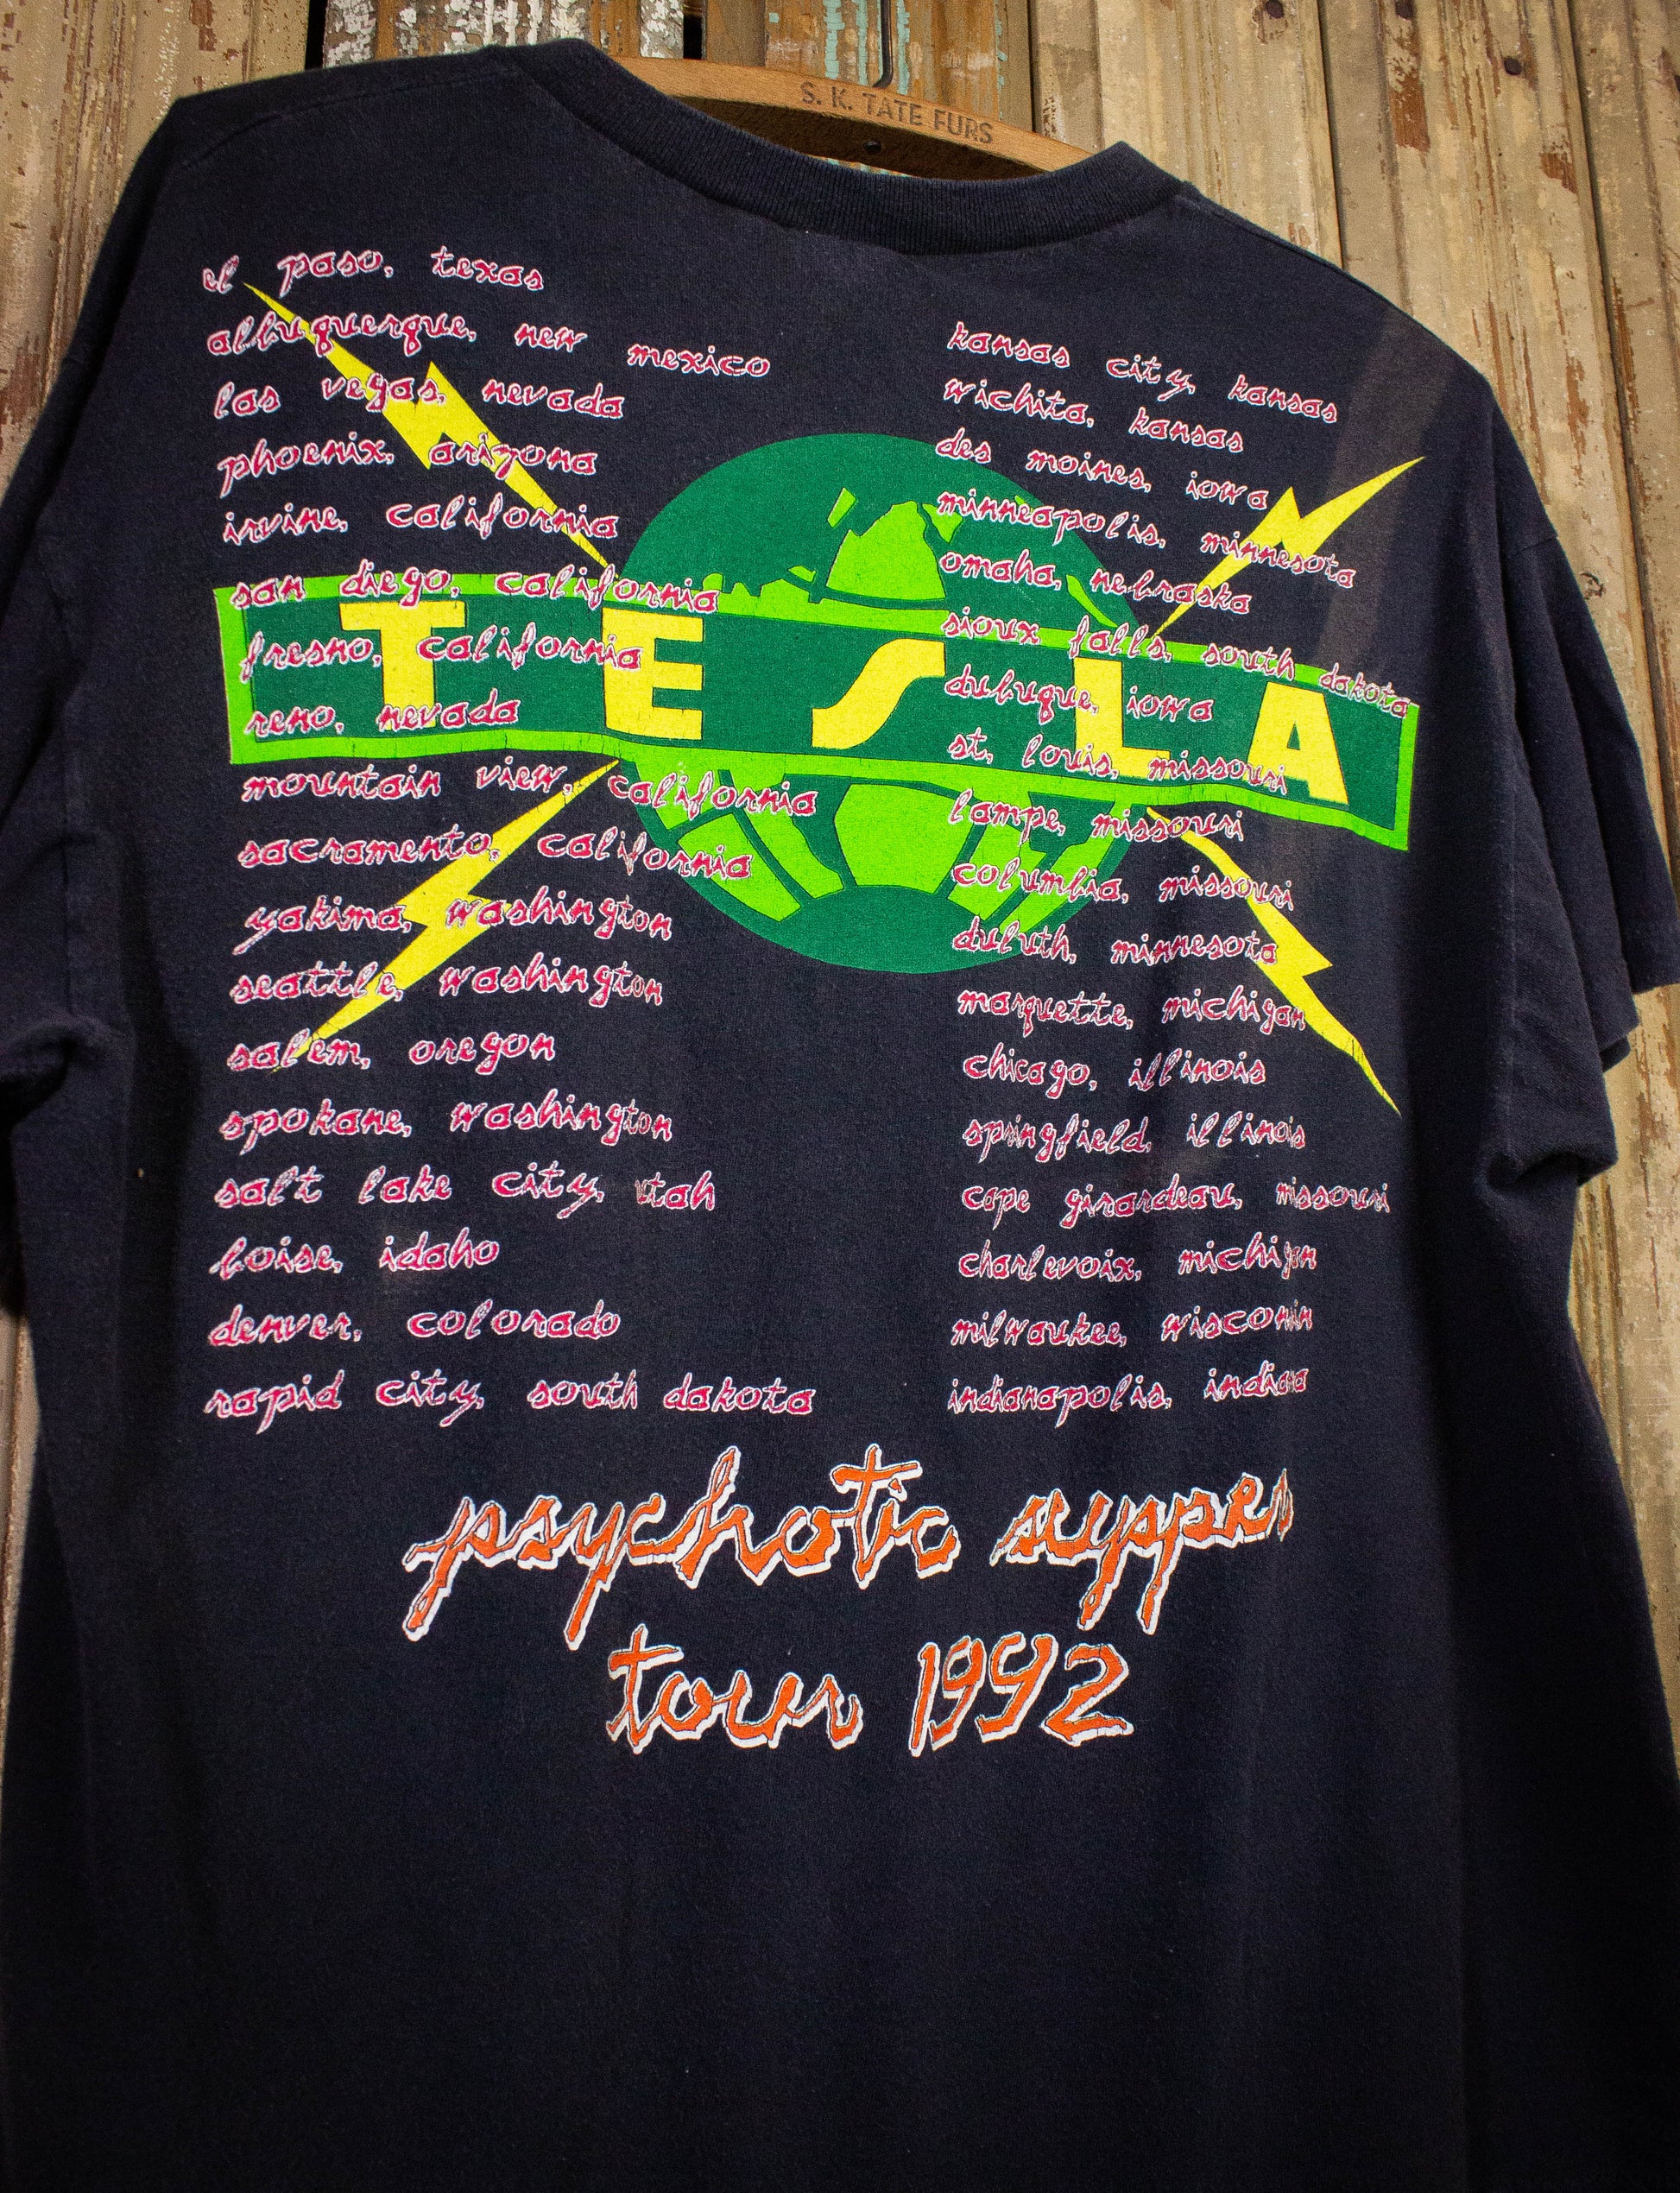 Vintage Tesla Psychotic Supper Tour Concert T Shirt 1992 Black Large